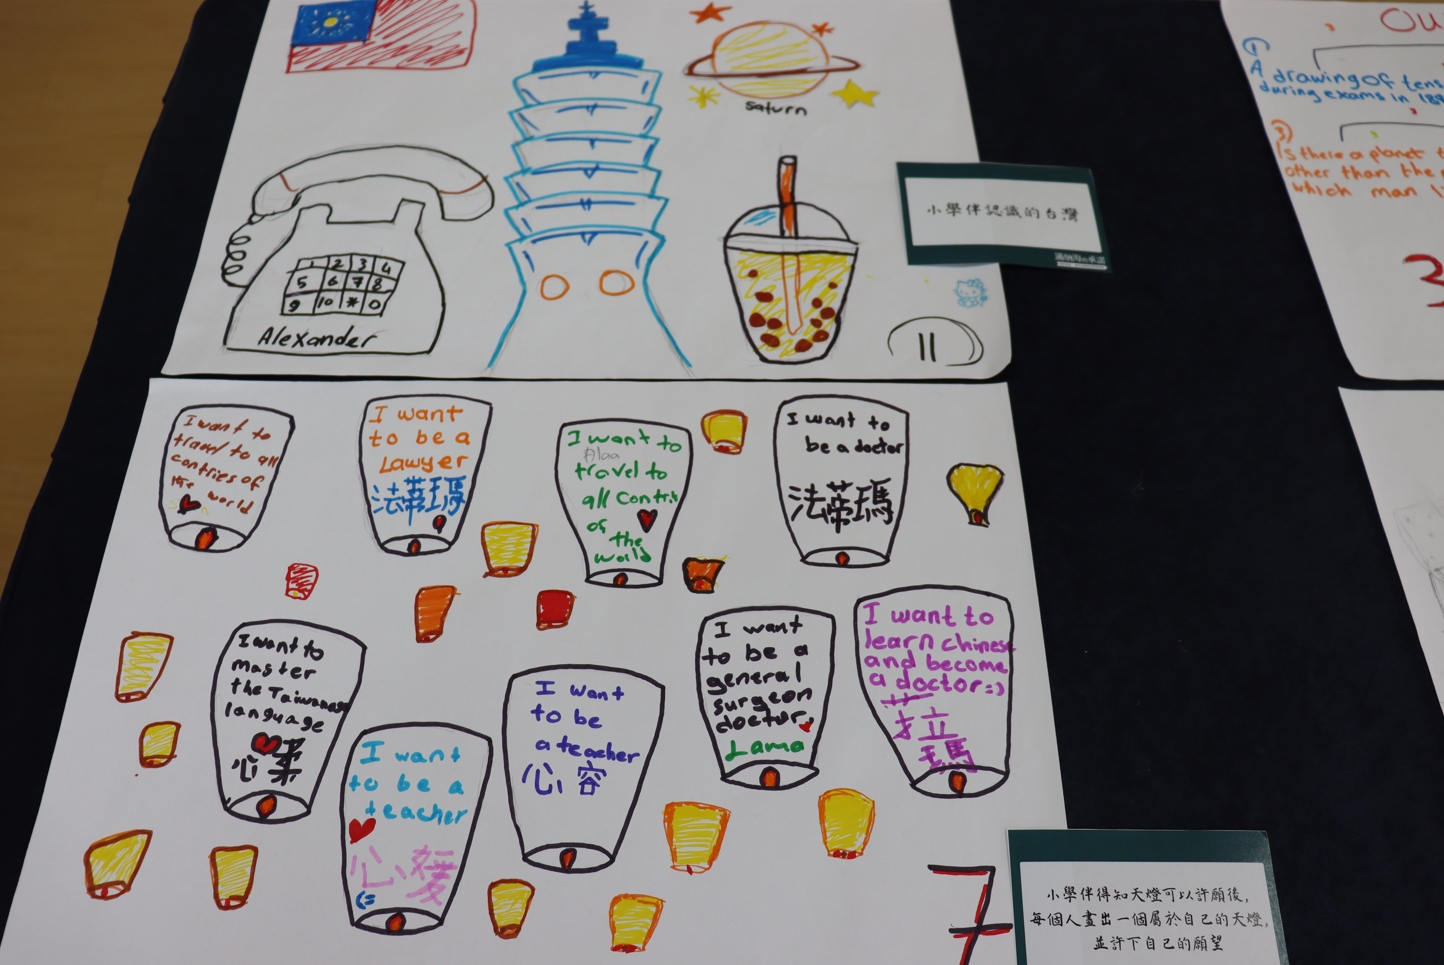 小學伴以繪圖方式回饋學習成果及心情感言。